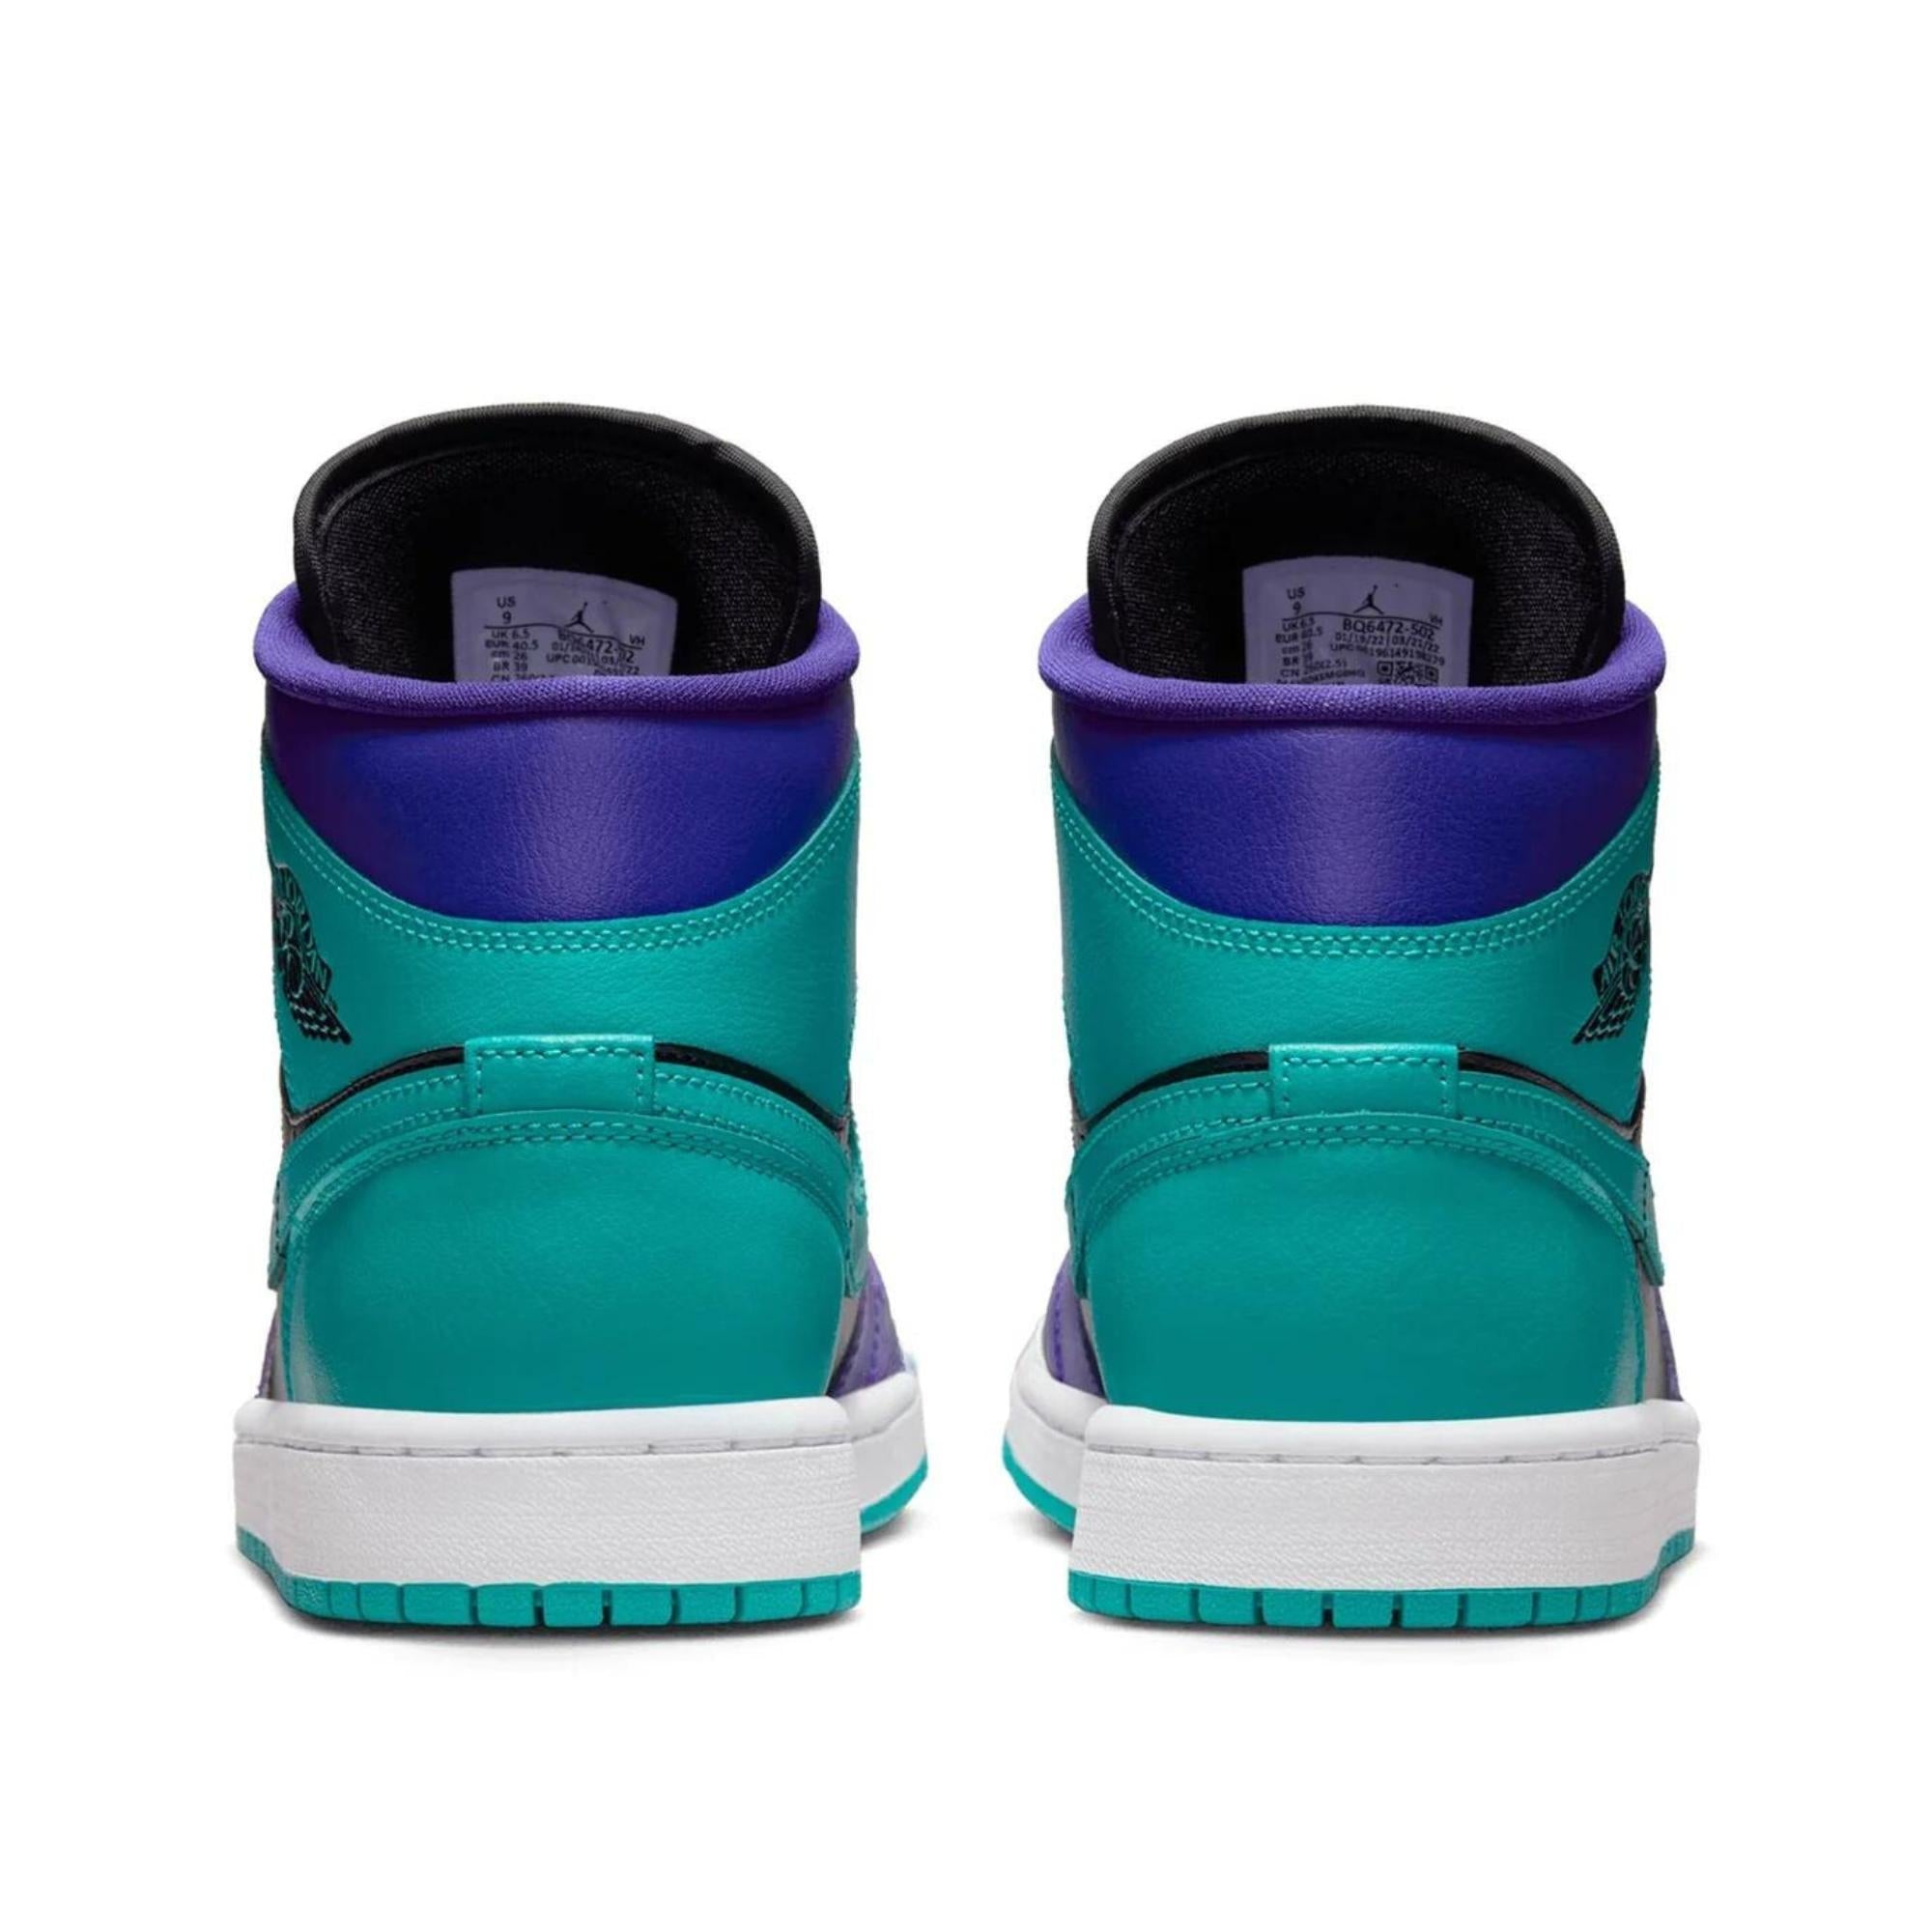 Air Jordan 1 Mid ’Black Grape’ Sneakers